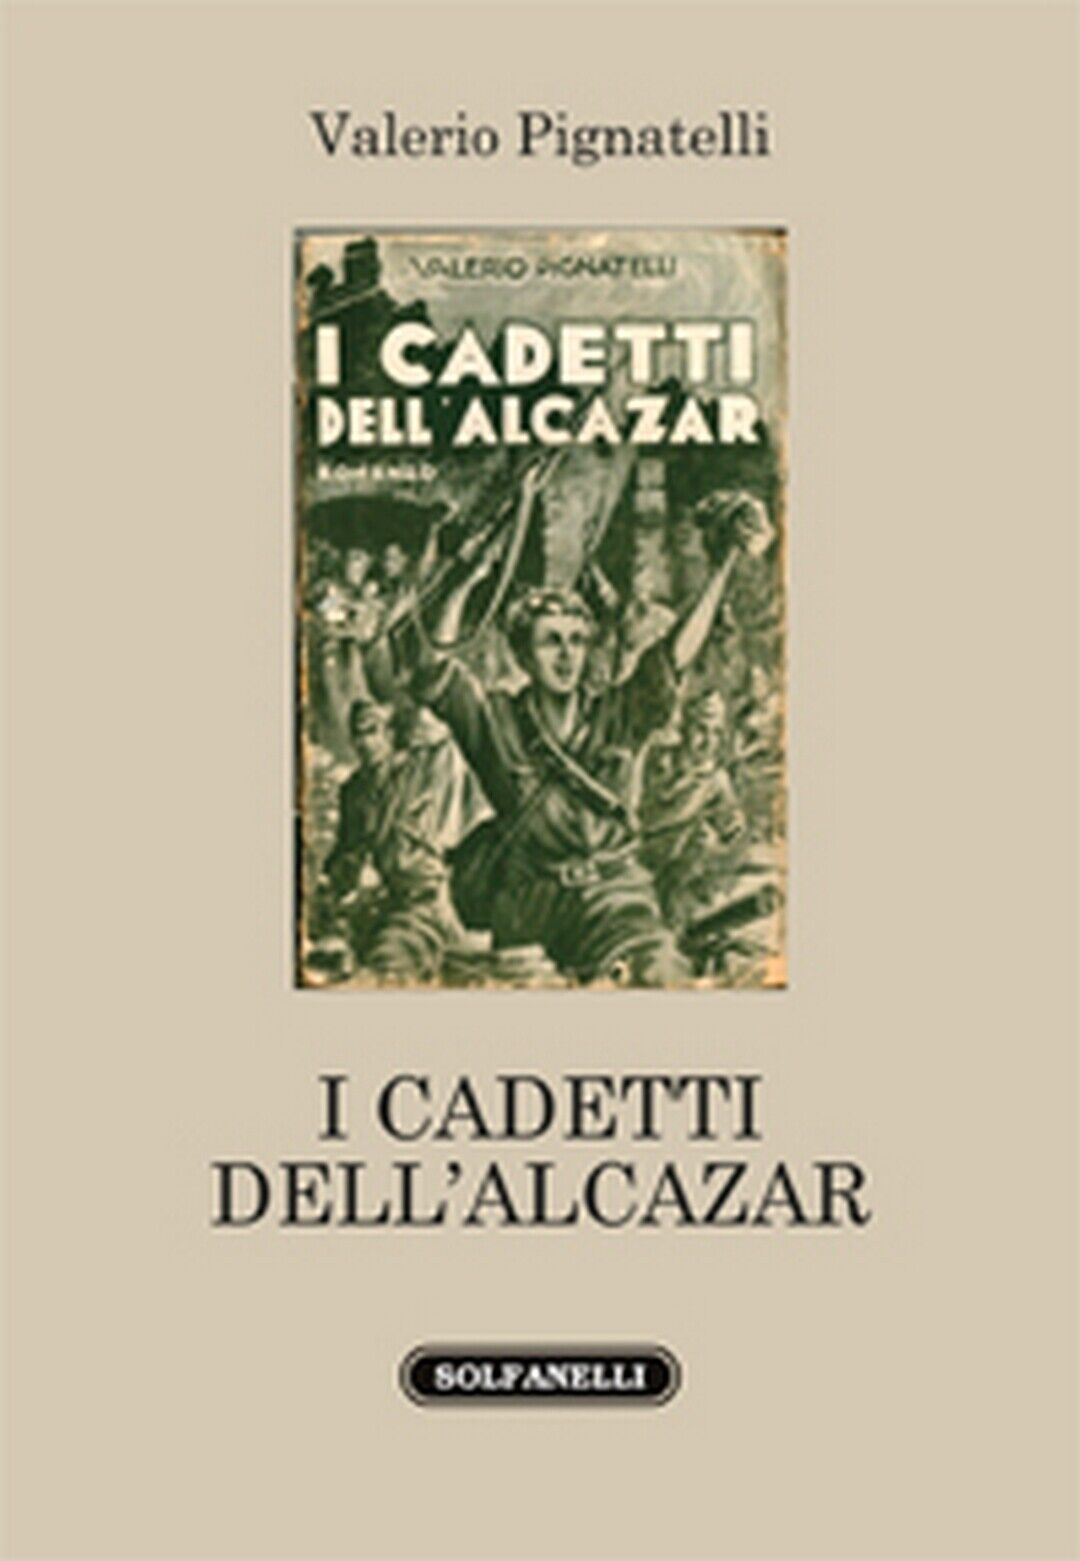 I CADETTI DELL'ALCAZAR  di Valerio Pignatelli,  Solfanelli Edizioni